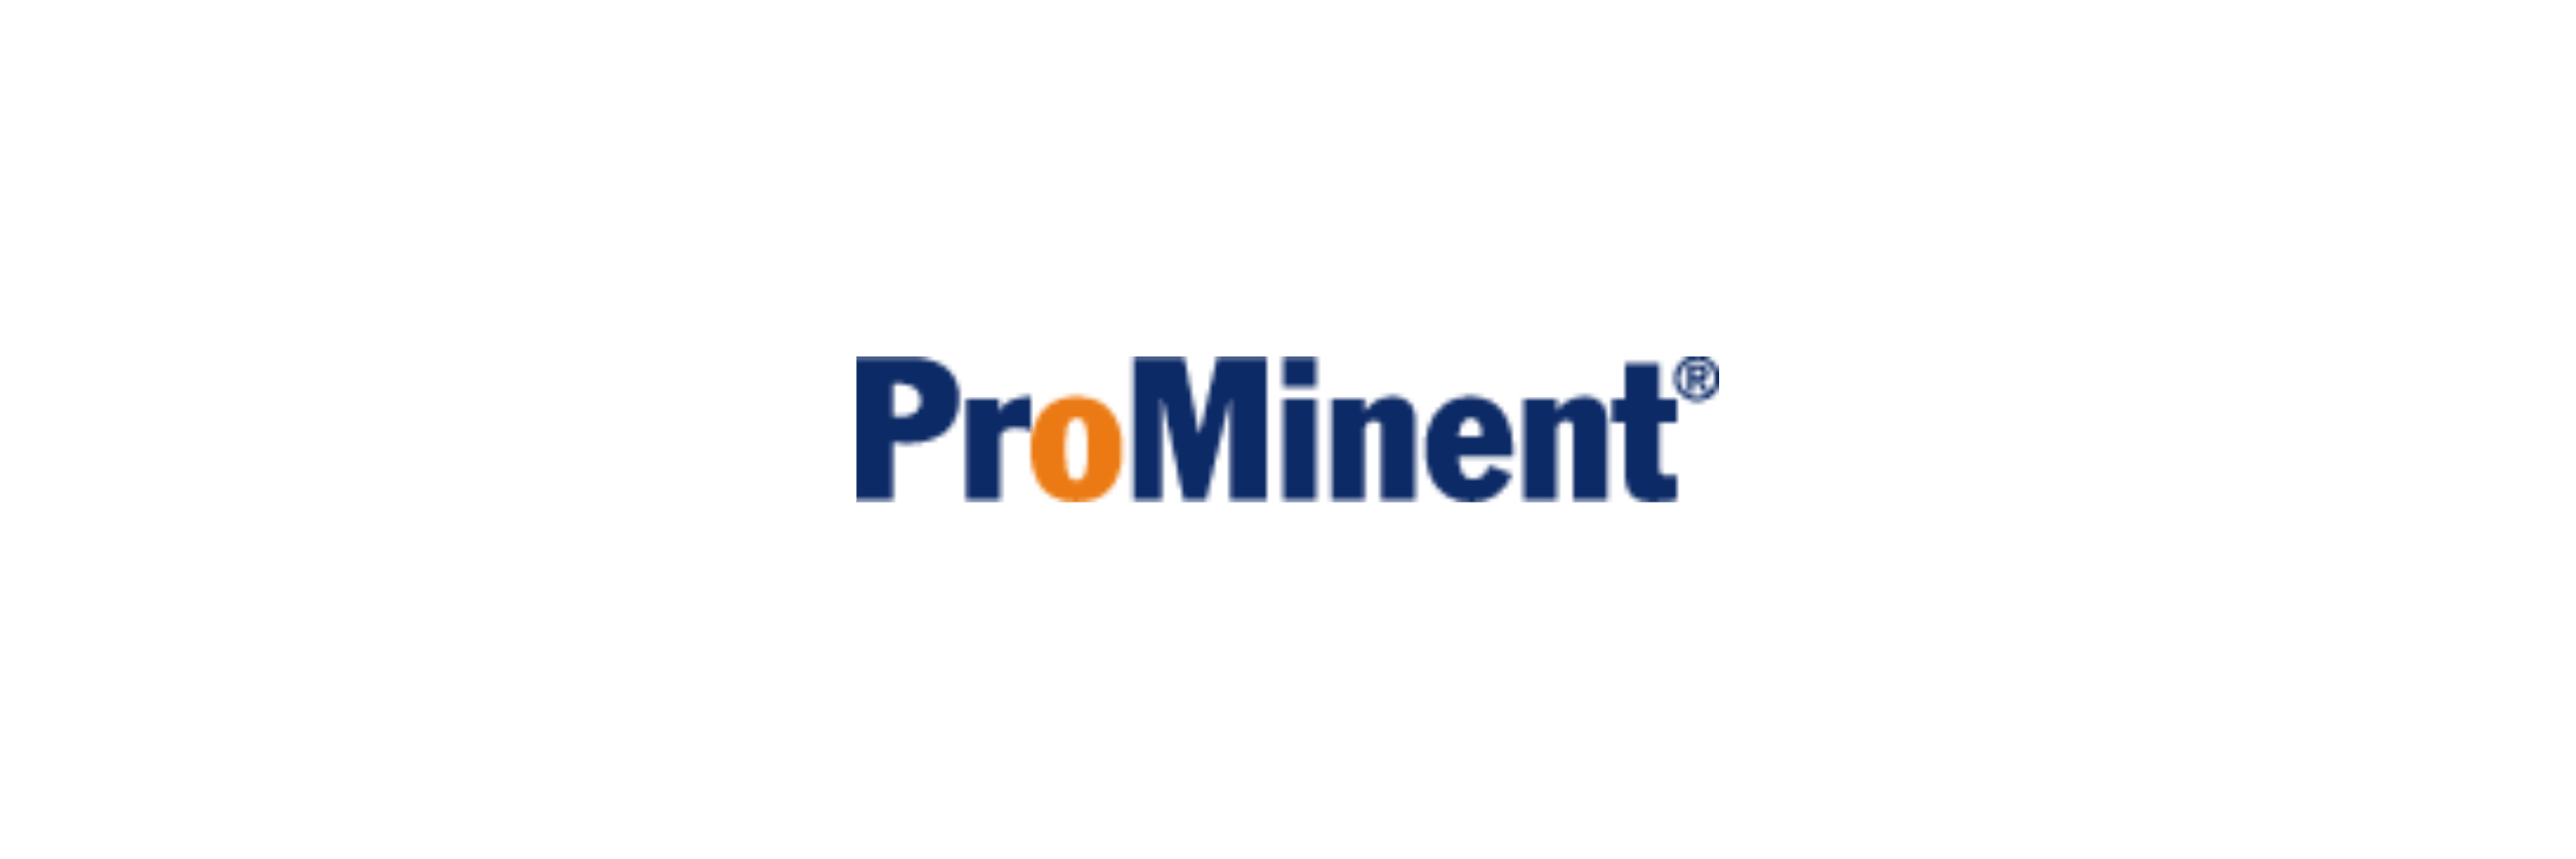 ProMinent - Klenk Maschinenhandel